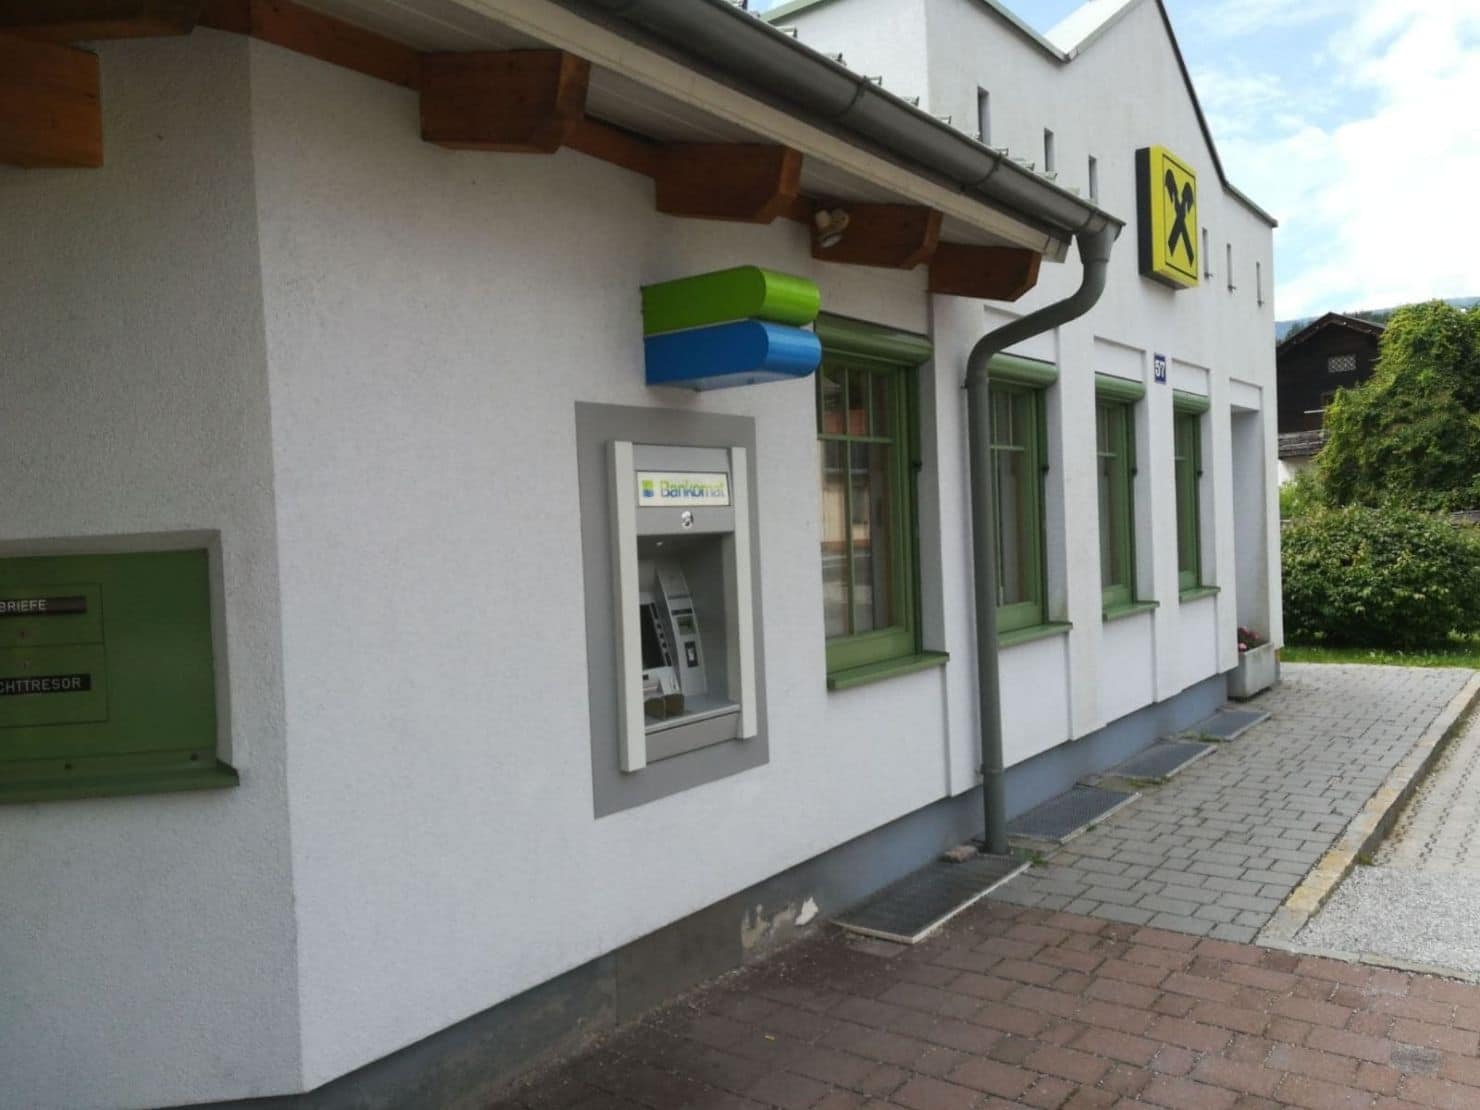 Wahrscheinlich mit Metallhaken brachen die Täter den Bankomaten in Villach auf.